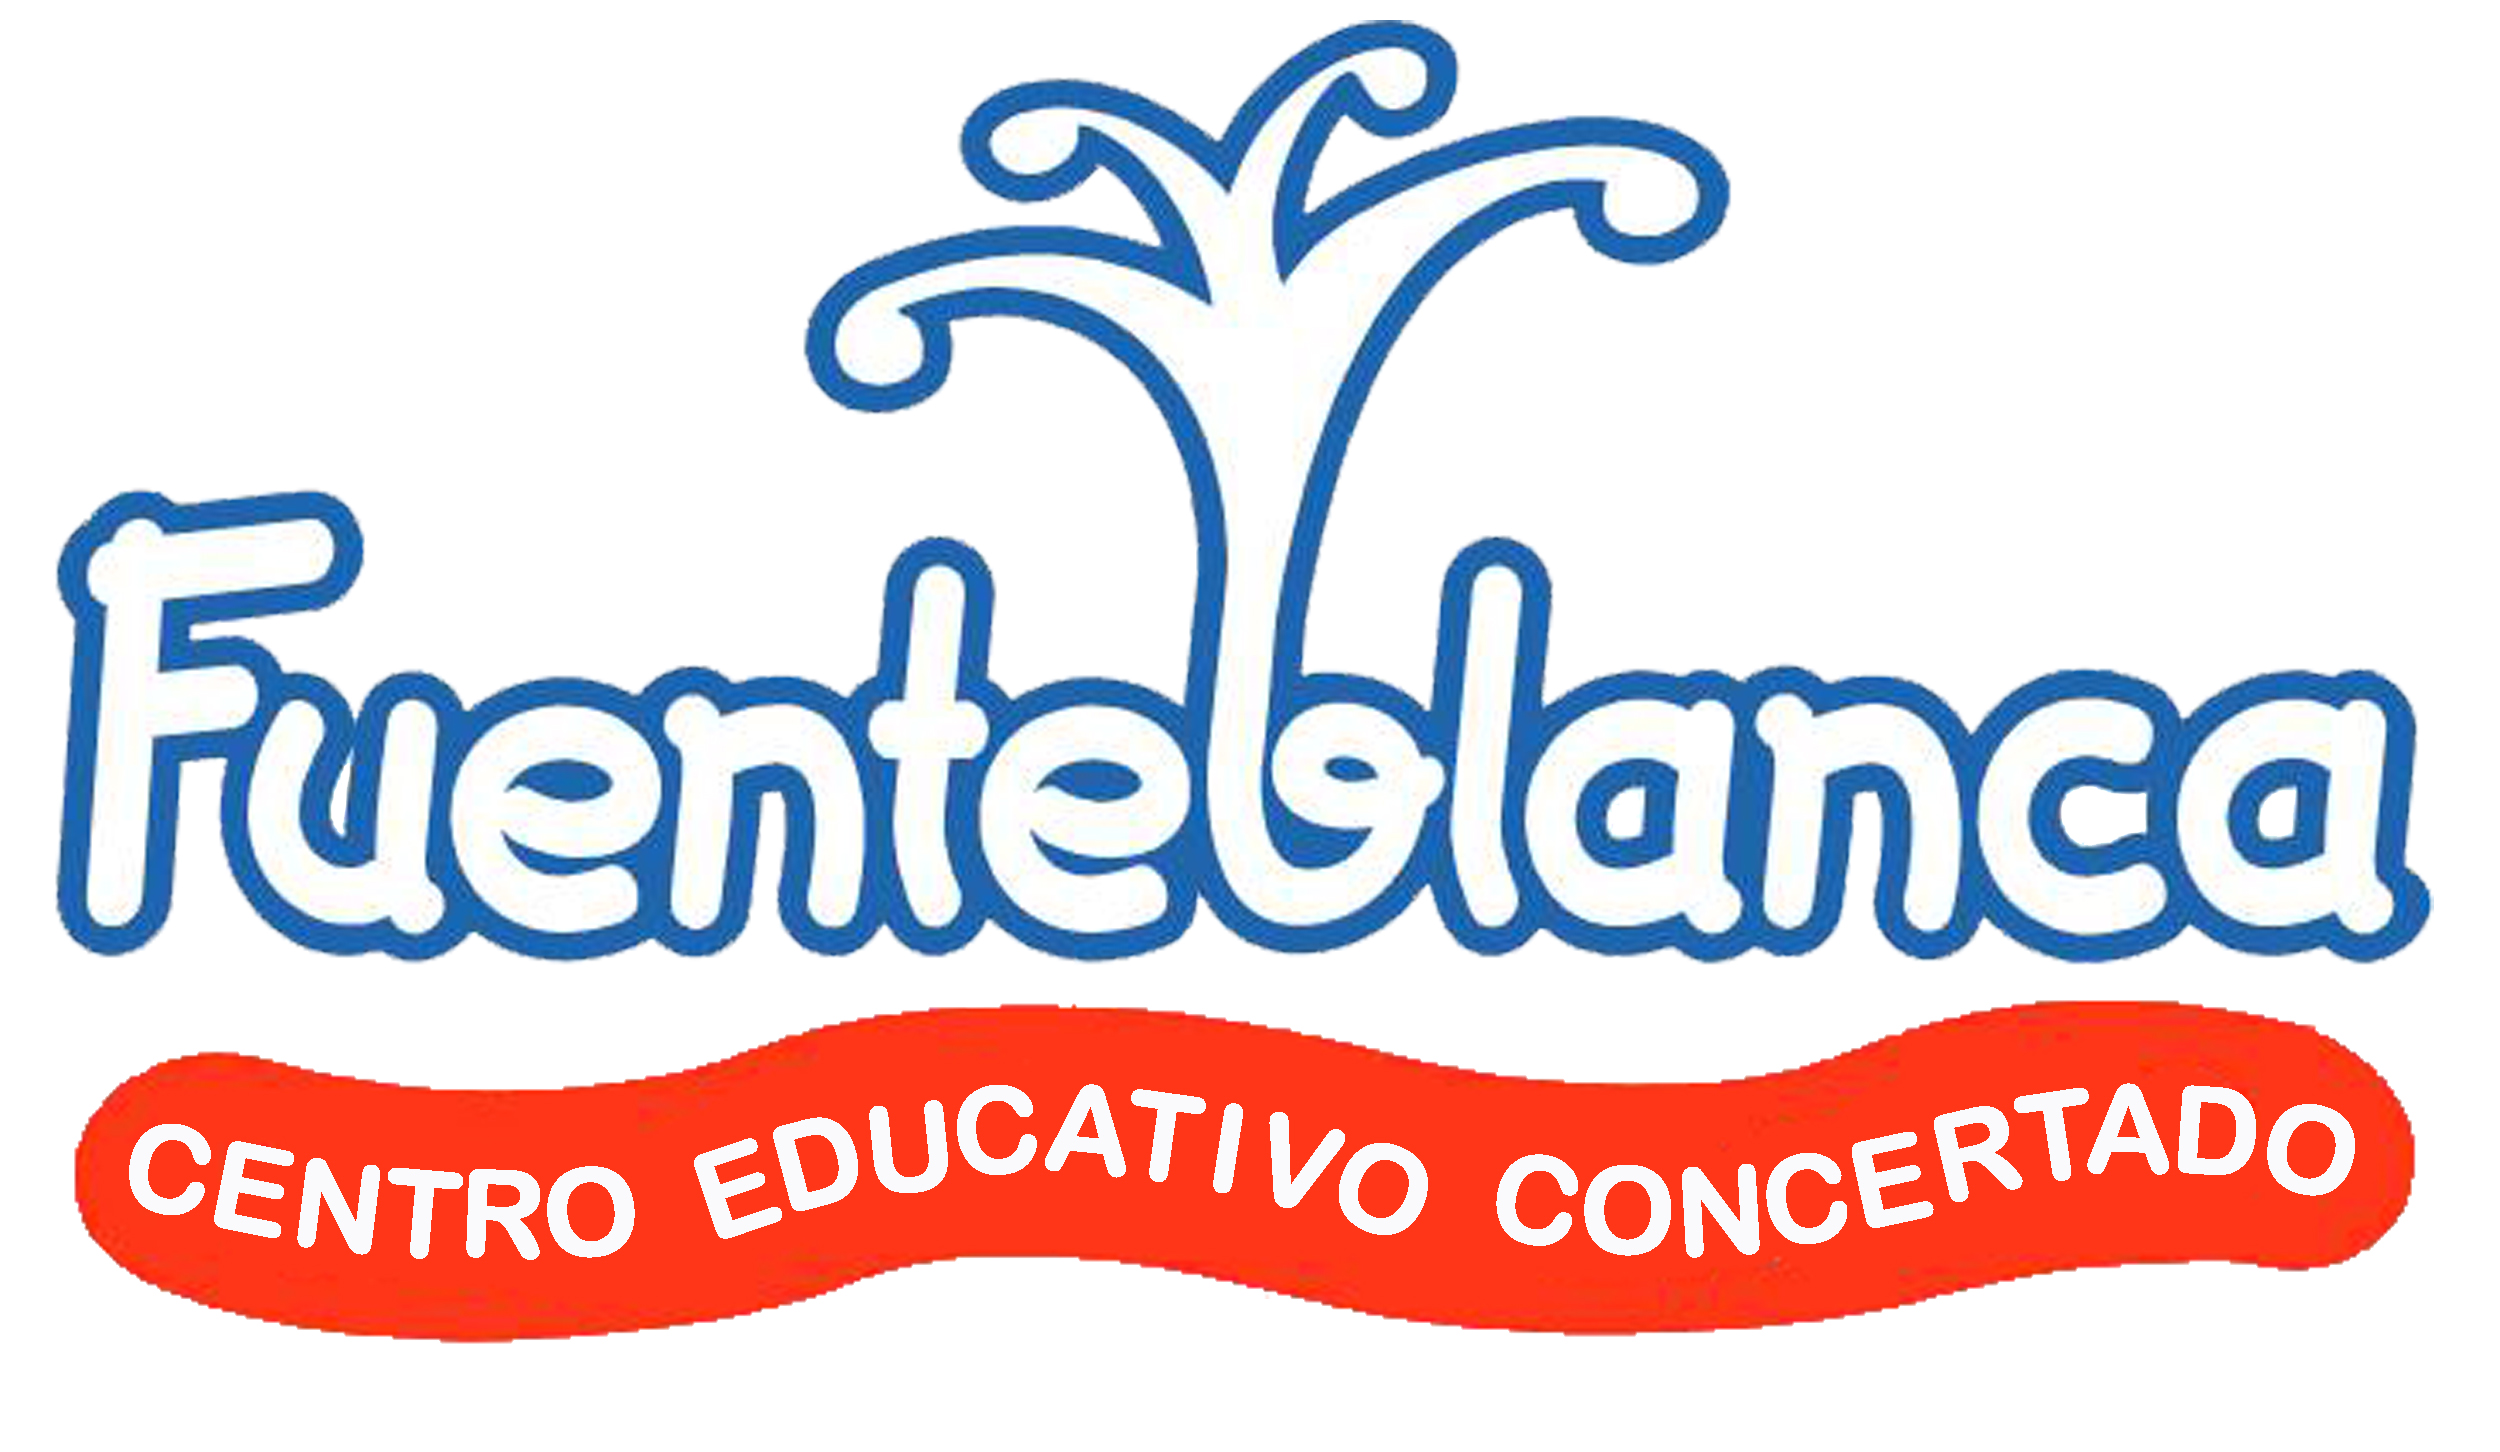 colegio fuenteblanca logo